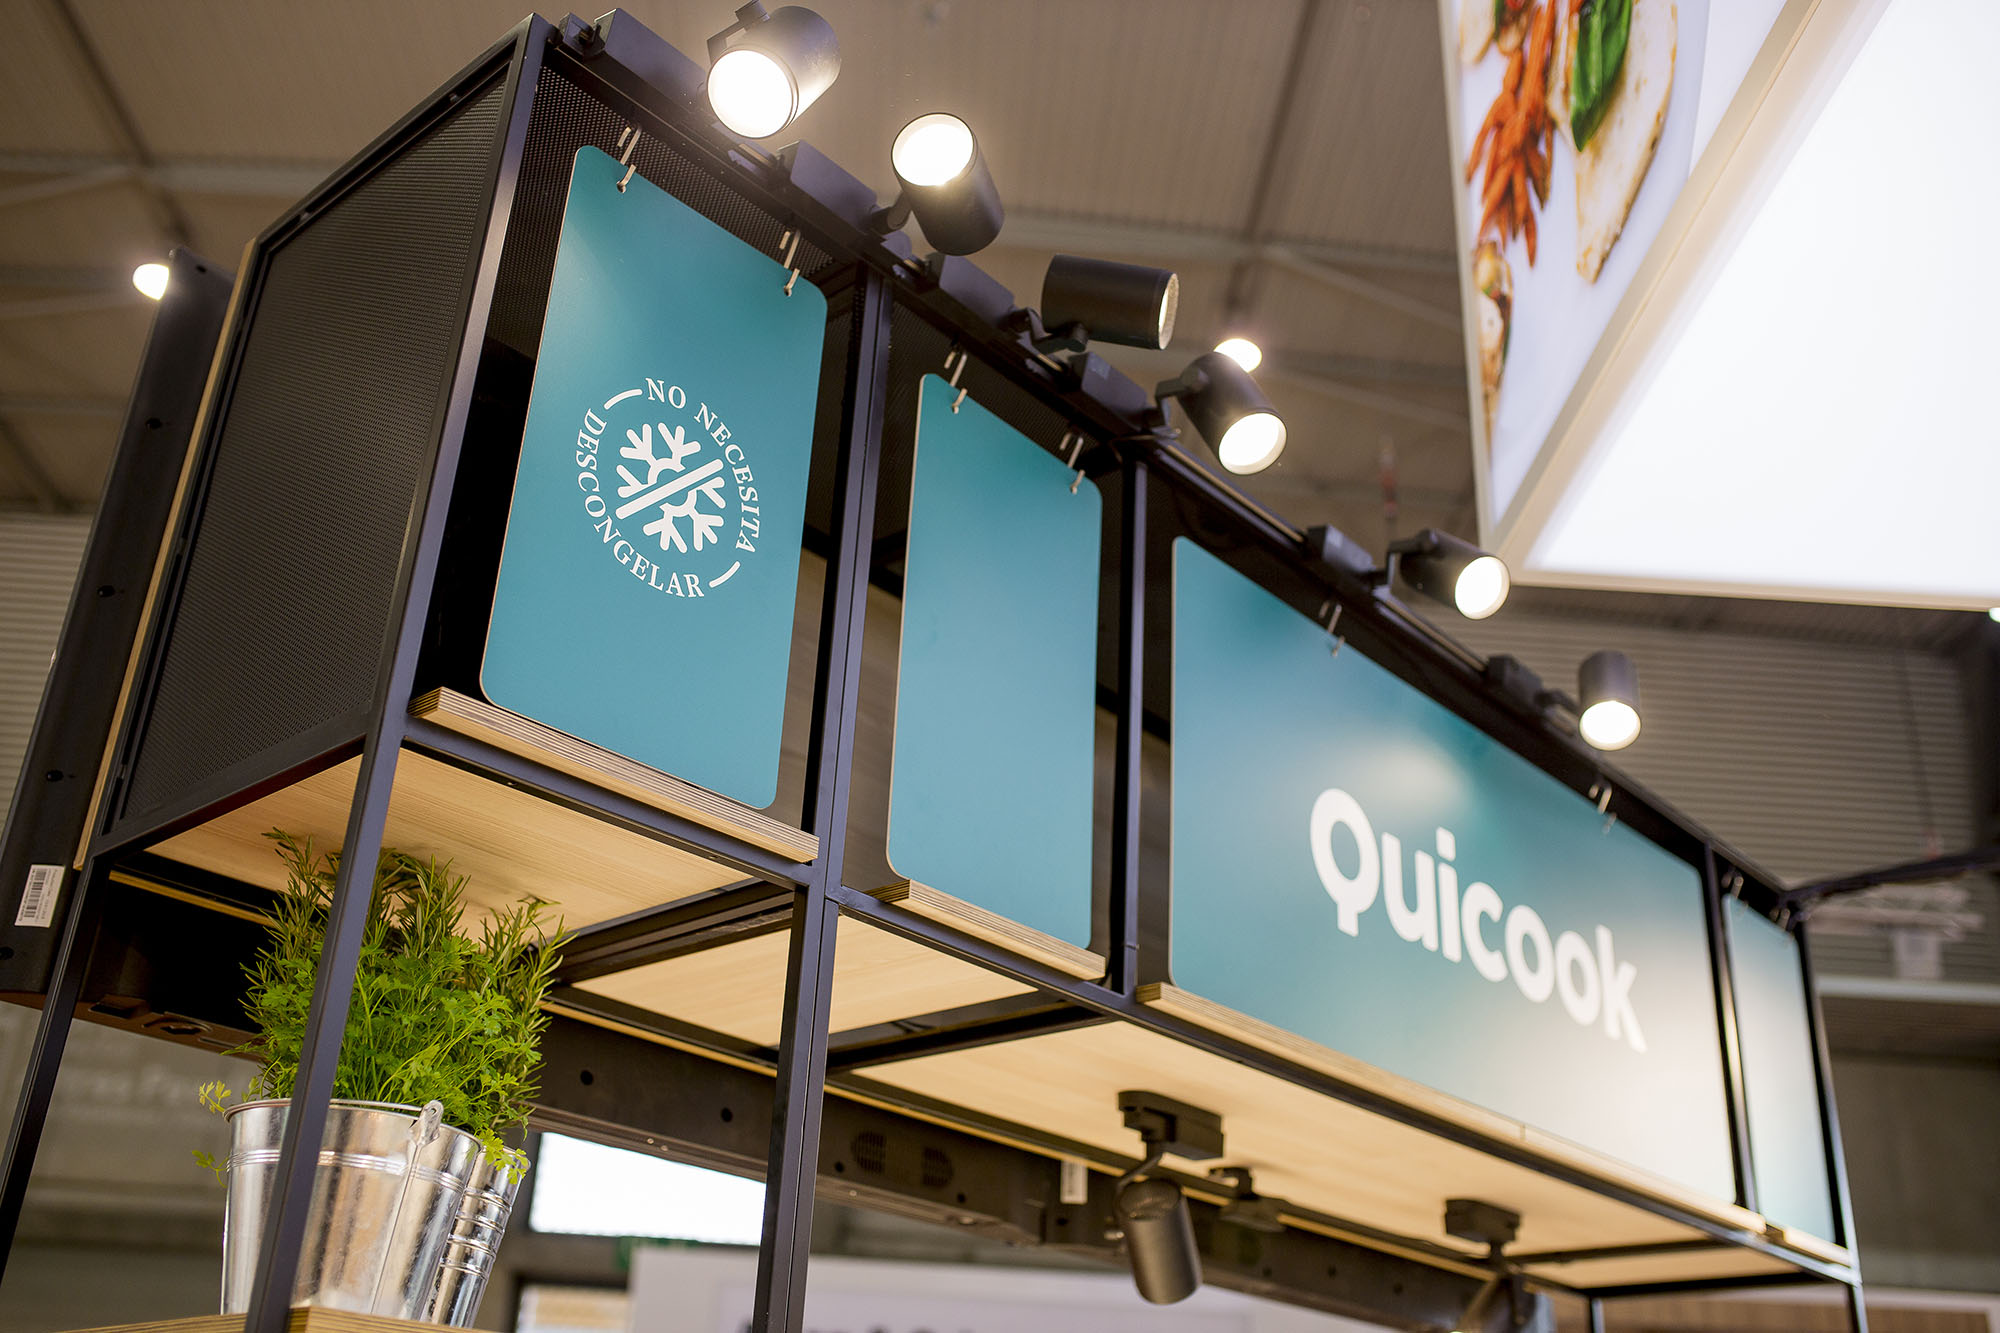 Proyecto de diseño de Stand para Quicook Foods en la Feria Alimentaria 2018 de Barcelona